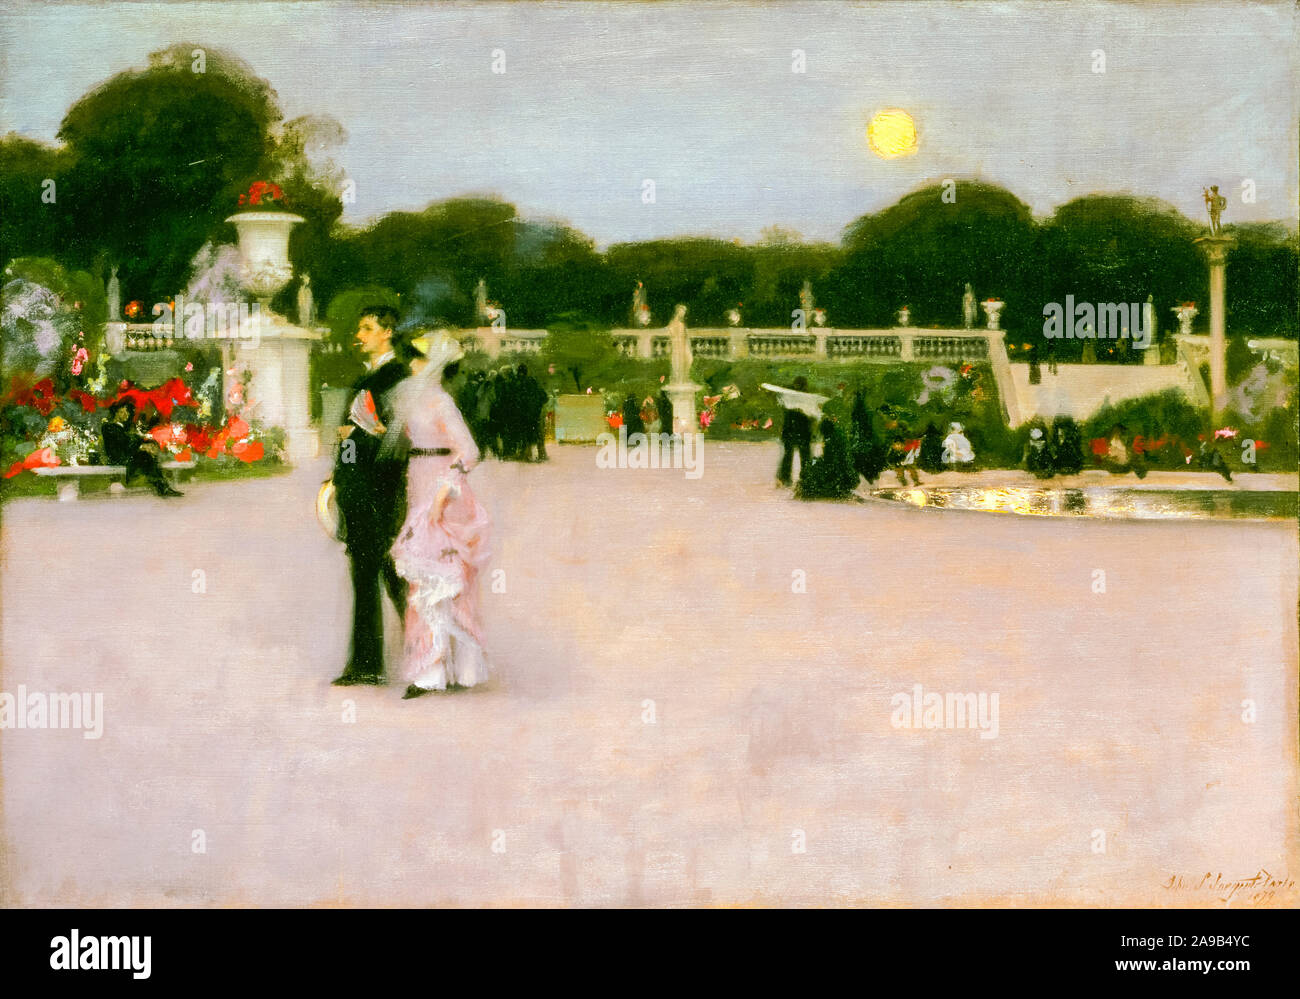 John Singer Sargent, dans les jardins du Luxembourg, (Paris), peinture, 1879 Banque D'Images